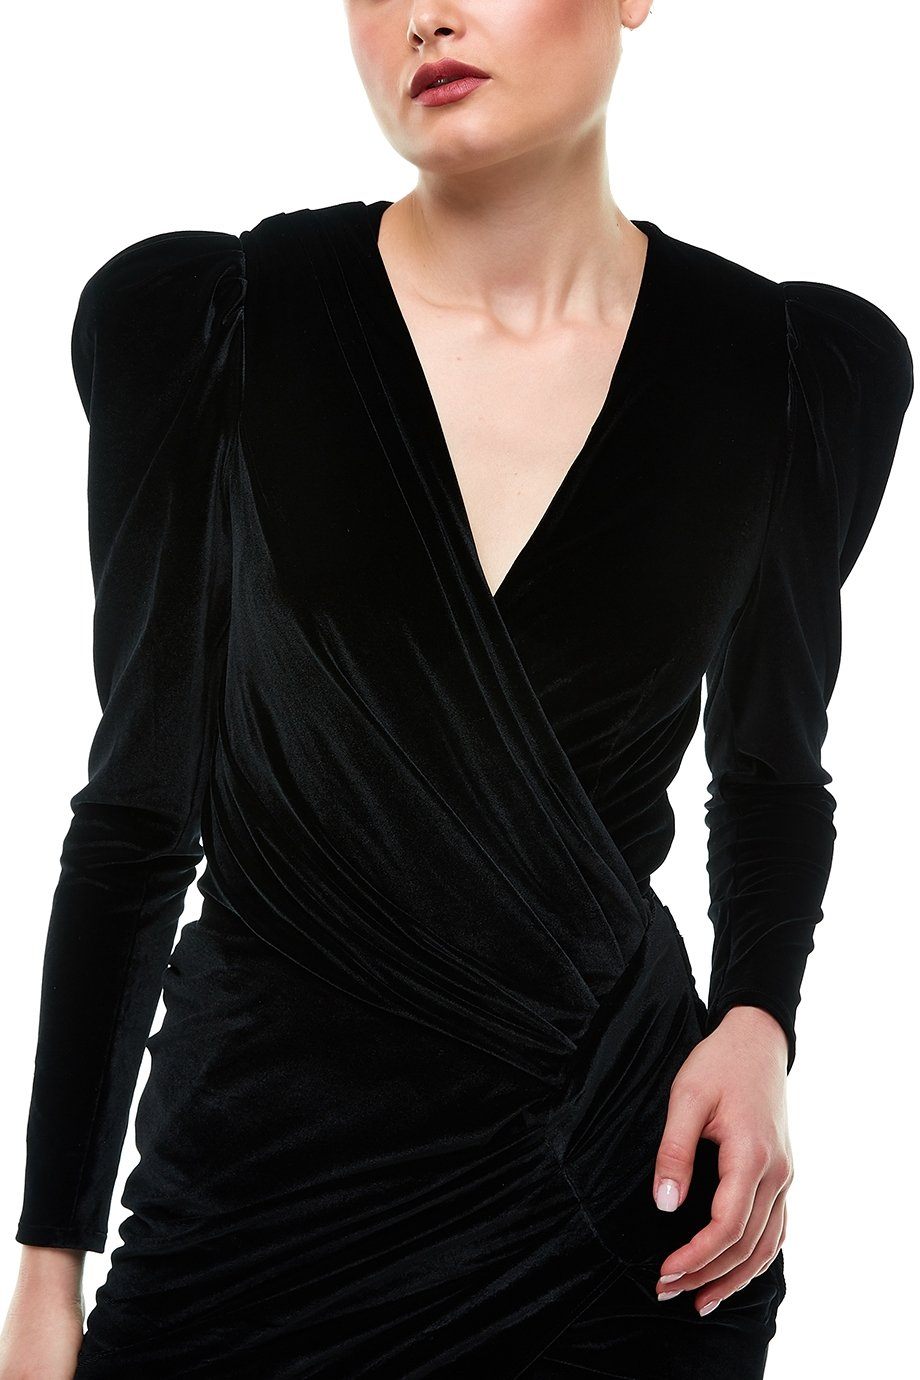 Black Velvet Jersey Dress